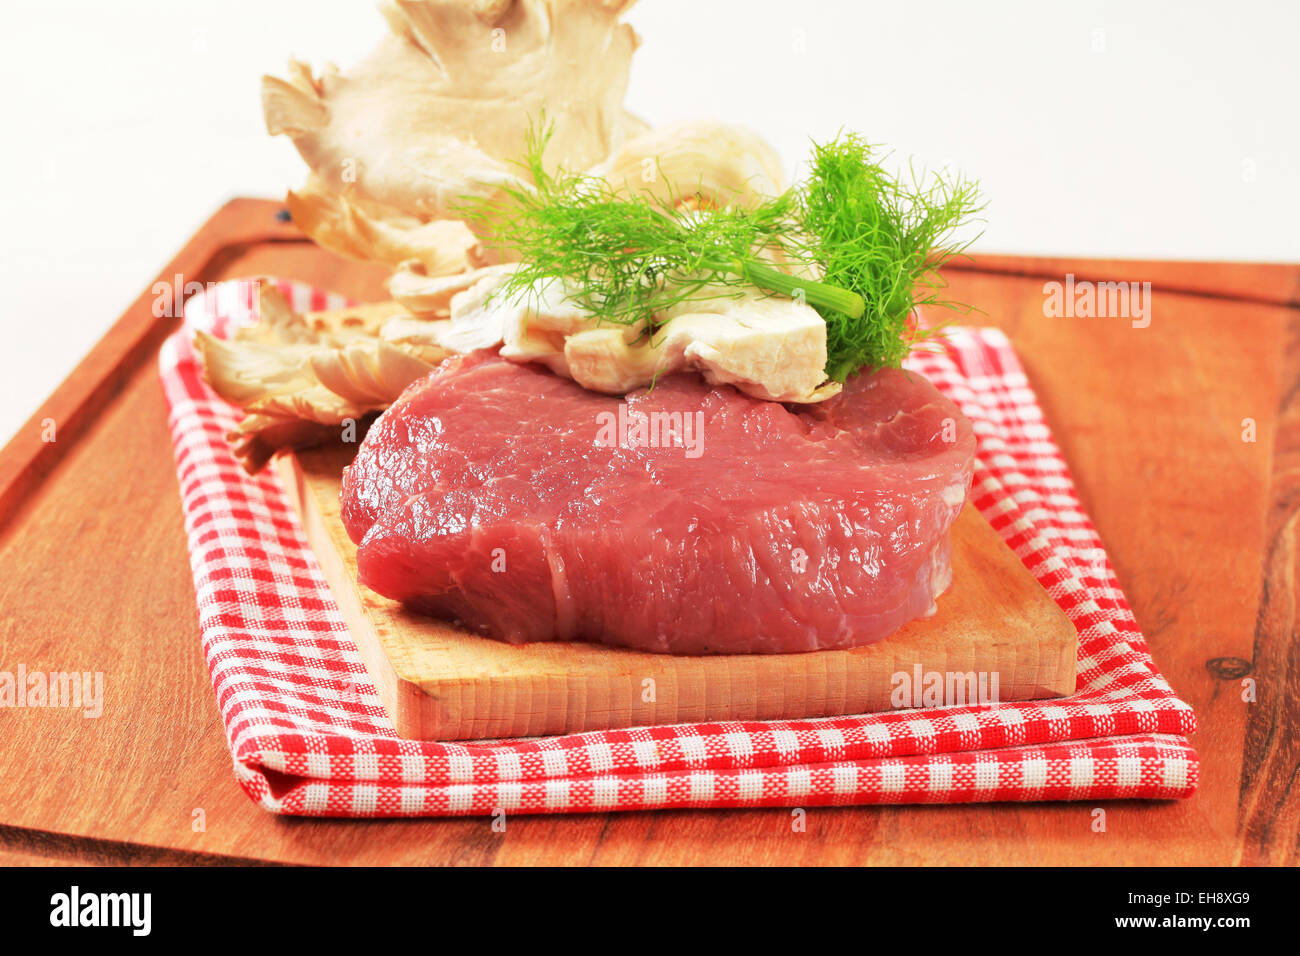 La viande rouge et des pleurotes sur une planche à découper Banque D'Images